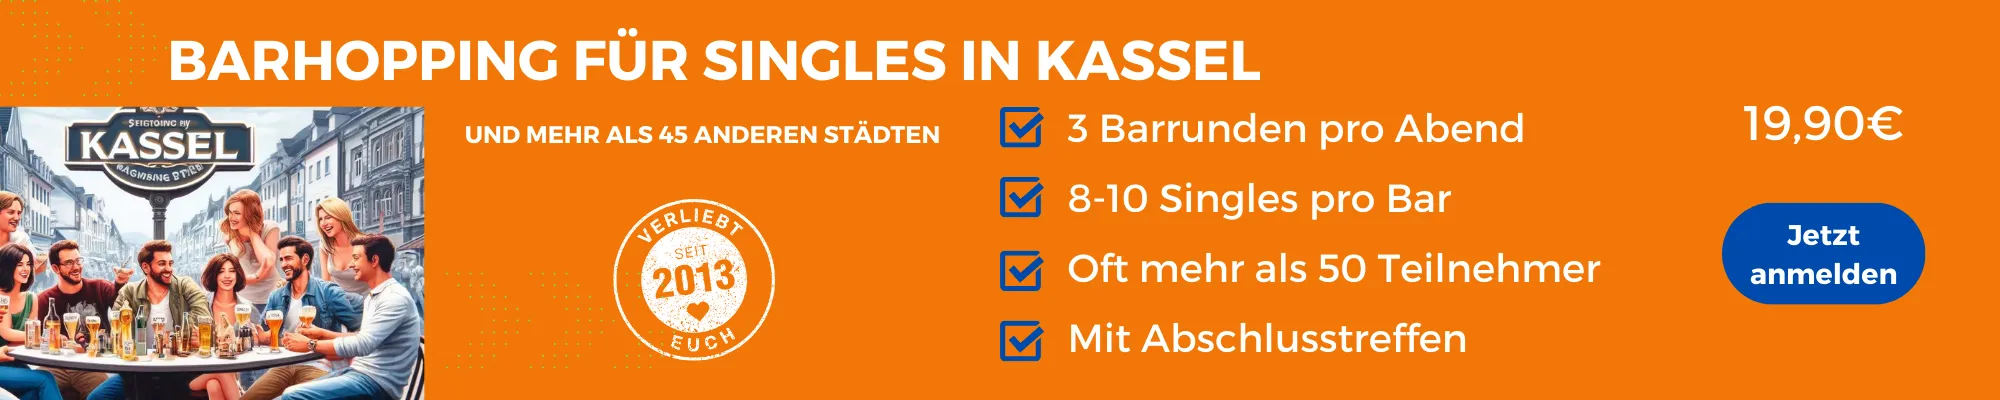 Face to Face Kassel: Barhopping für Singles in Kassel